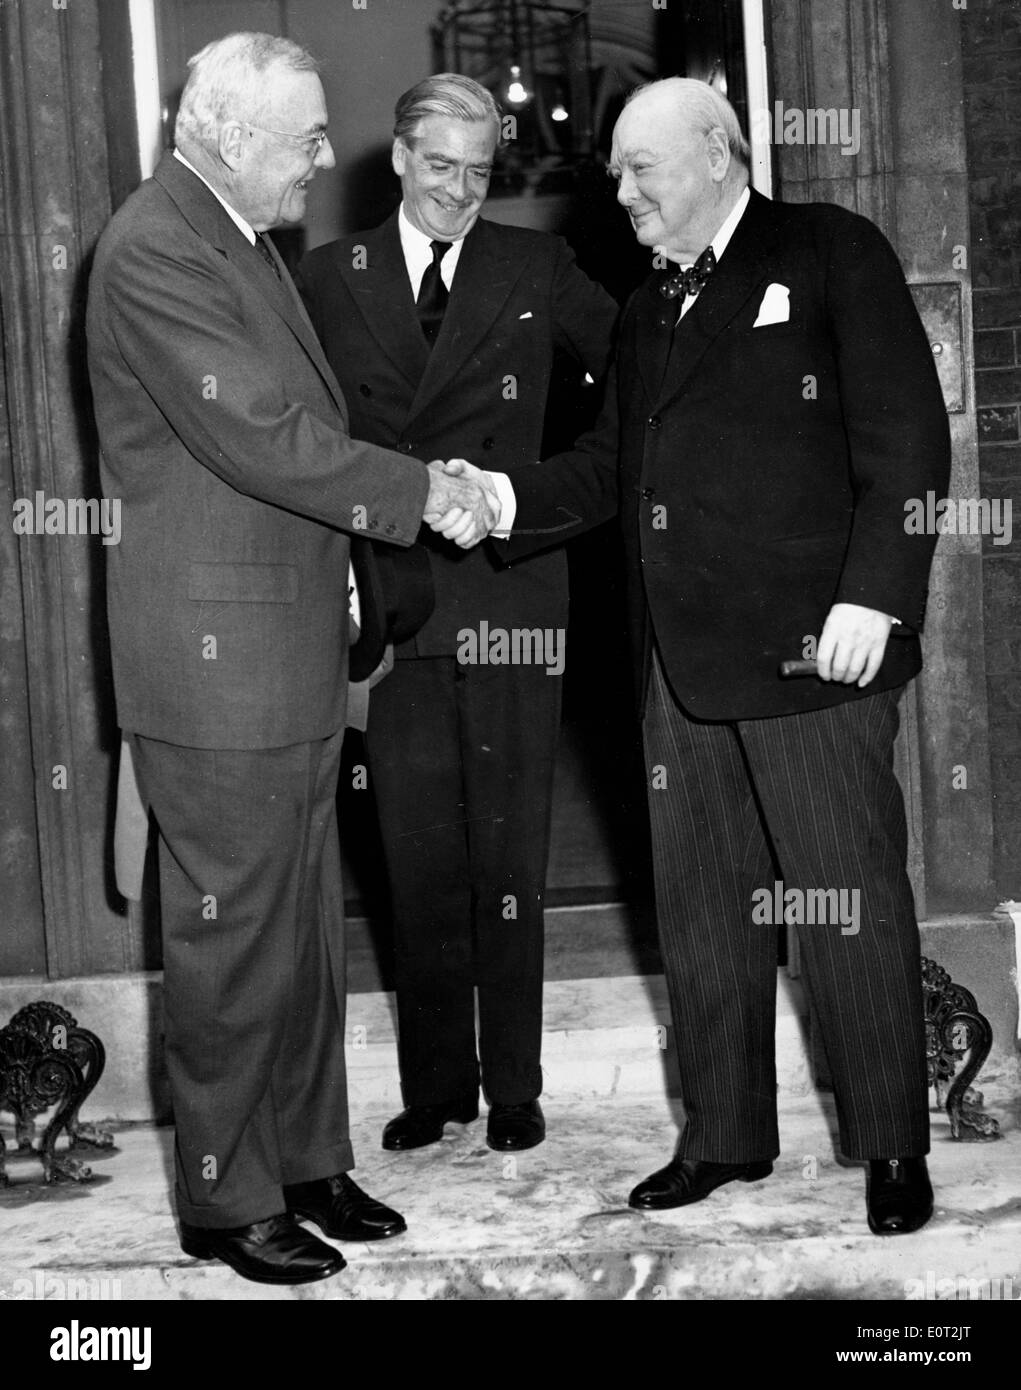 Premier ministre Anthony Eden et Sir Winston Churchill Banque D'Images